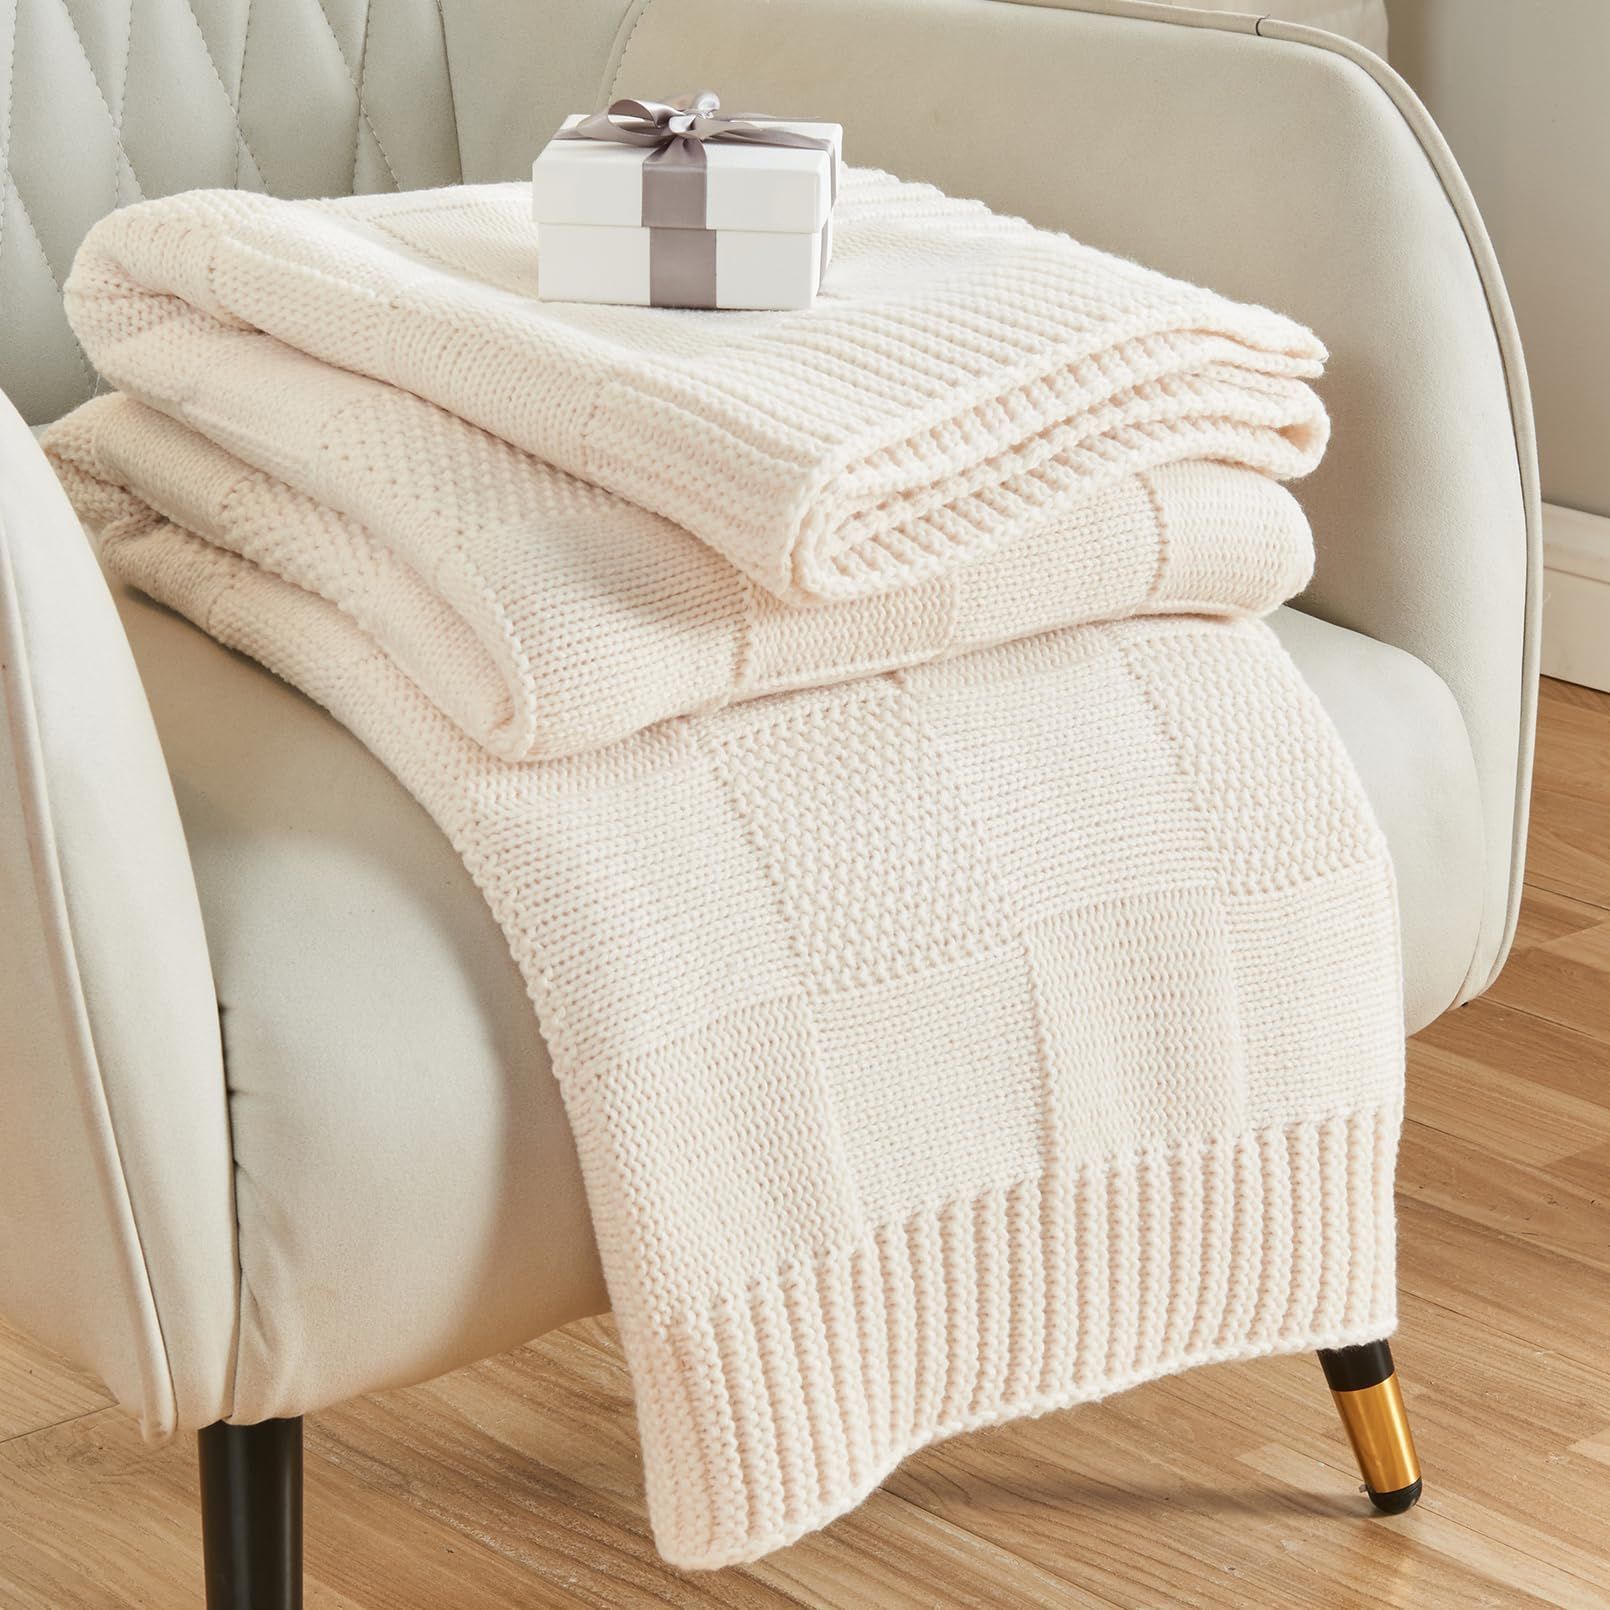 Knit Throw Blanket, White Checkered Throw Blanket for Couch, Soft Cozy Knitted Throw Blanket for ... | Amazon (US)